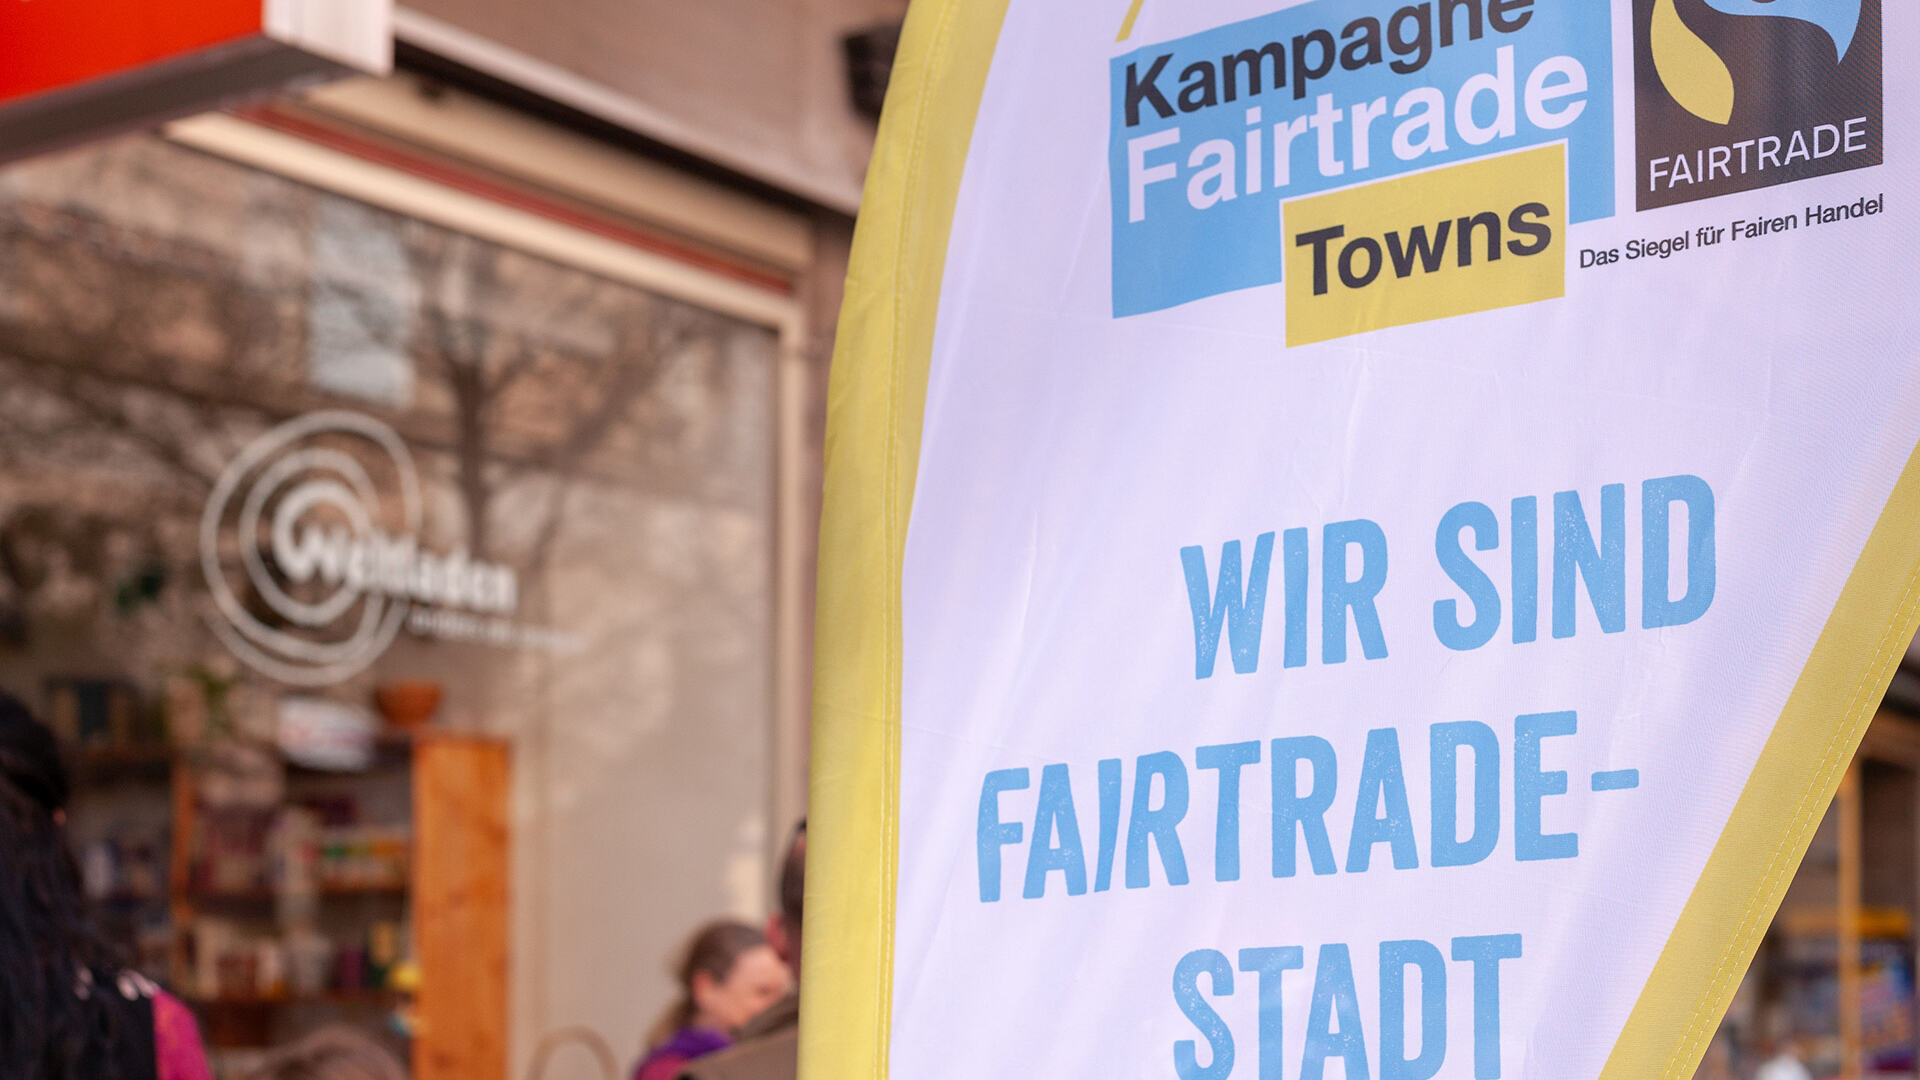 Fairtrade_town_Großformat